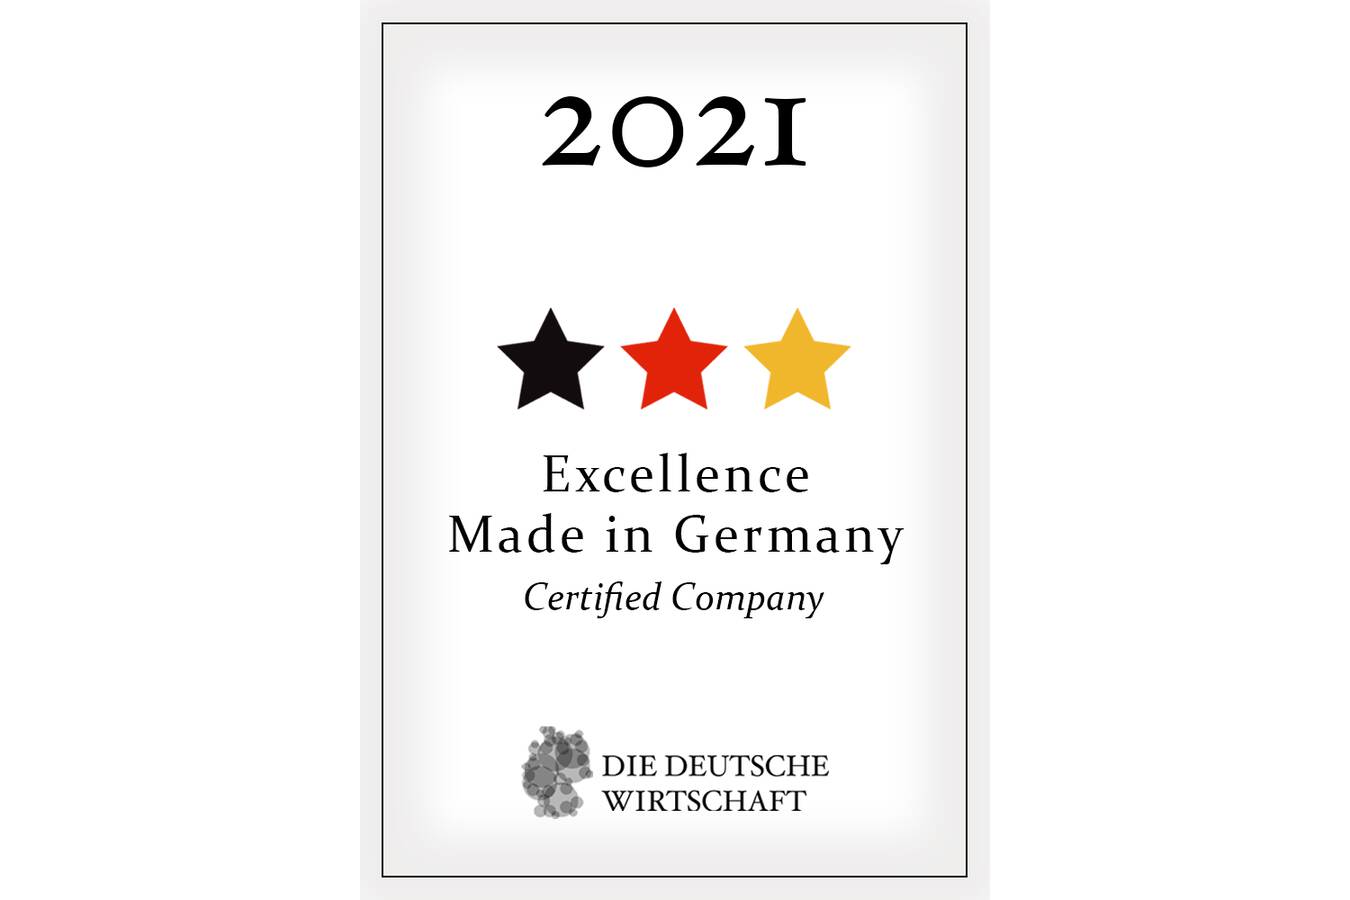 FRITSCH wurde als Exzellenzbetrieb ausgezeichnet DDW Die Deutsche Wirtschaft hat FRITSCH als eines der 3.000 deutschen Unternehmen in Trend- und Wachstumsmärkten identifiziert.